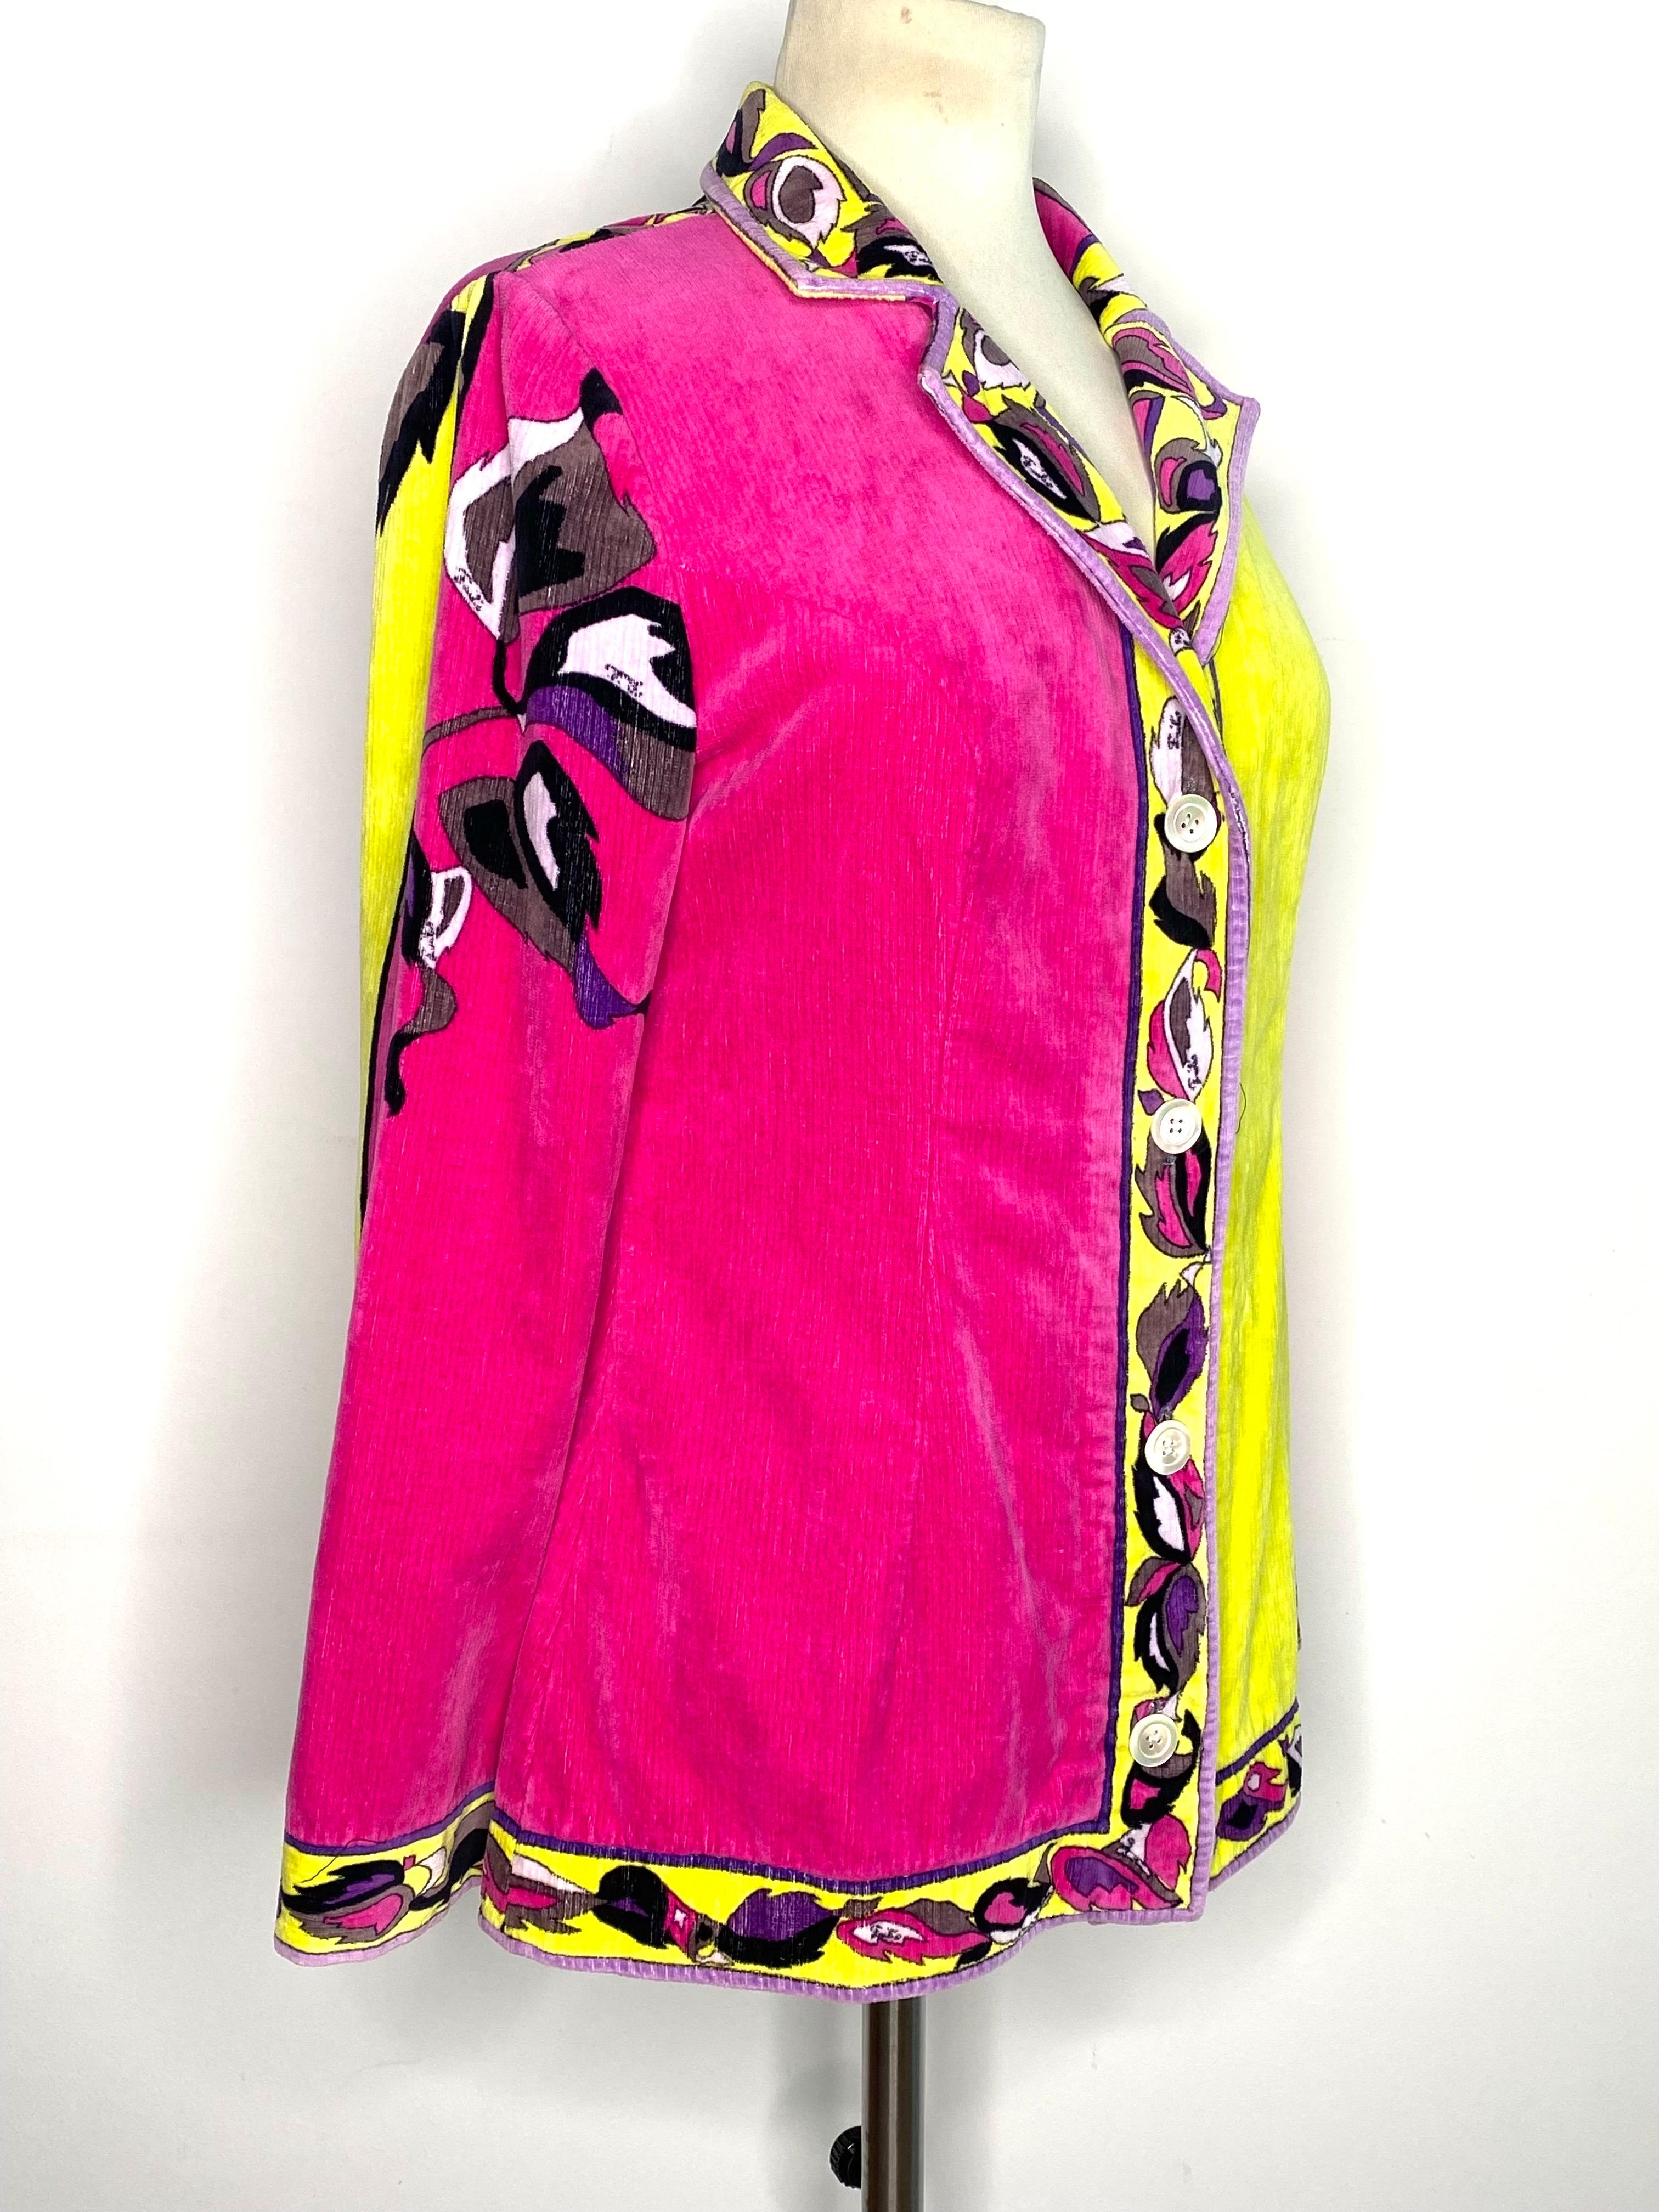 Emilio Pucci Samtjacke um 1970 mit einreihiger Front.
Blumenmuster auf einem leuchtend gelben und rosa Hintergrund.
4 perlmuttfarbene Knöpfe schließen die Jacke.
Etiketten für Größe und Zusammensetzung fehlen, geschätzte Größe 38FR, siehe